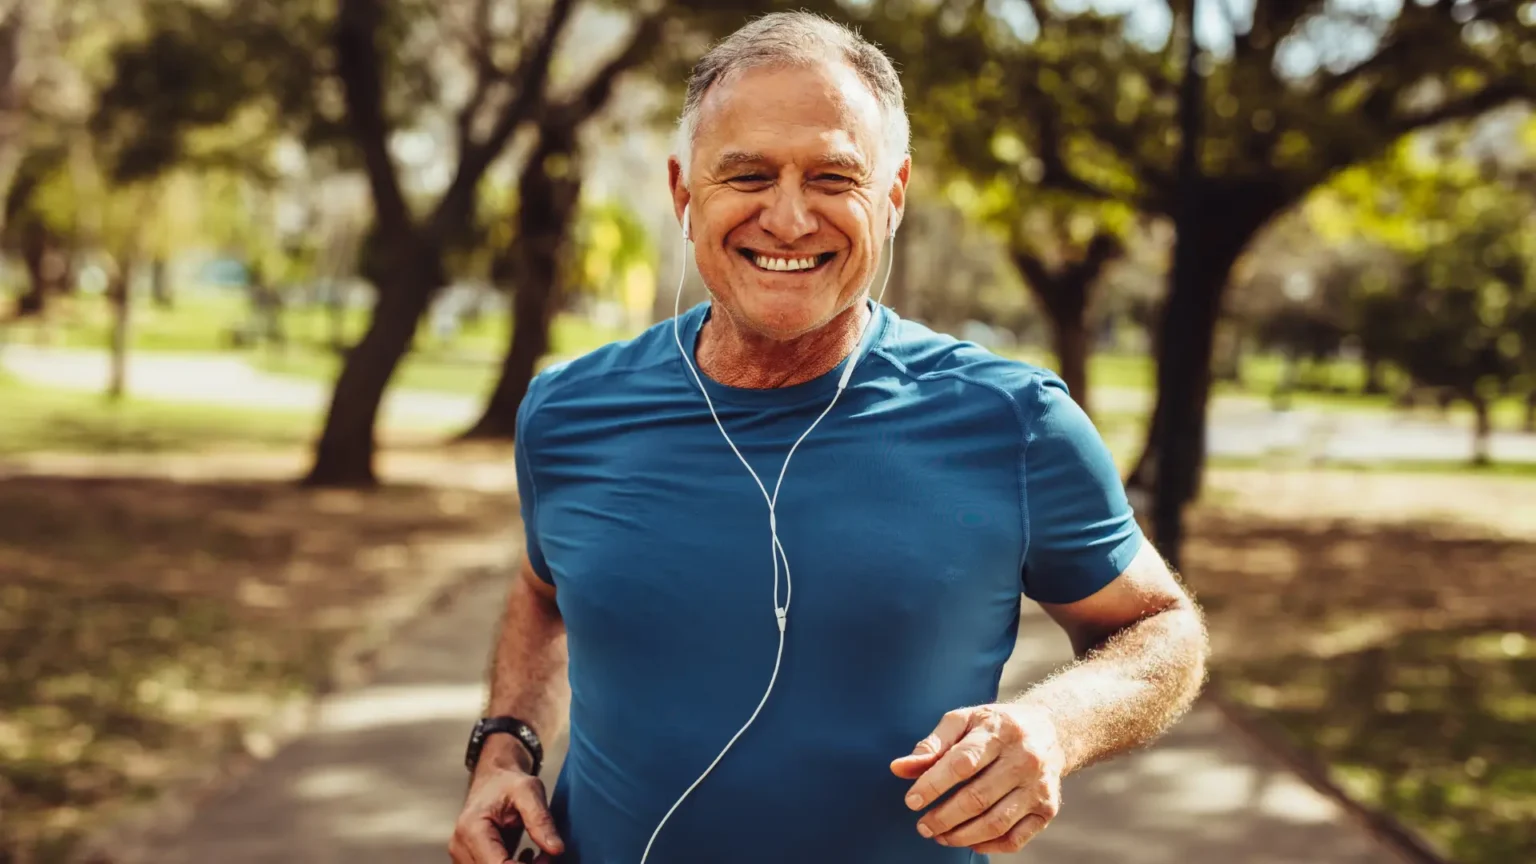 a healthy senior citizen on a run